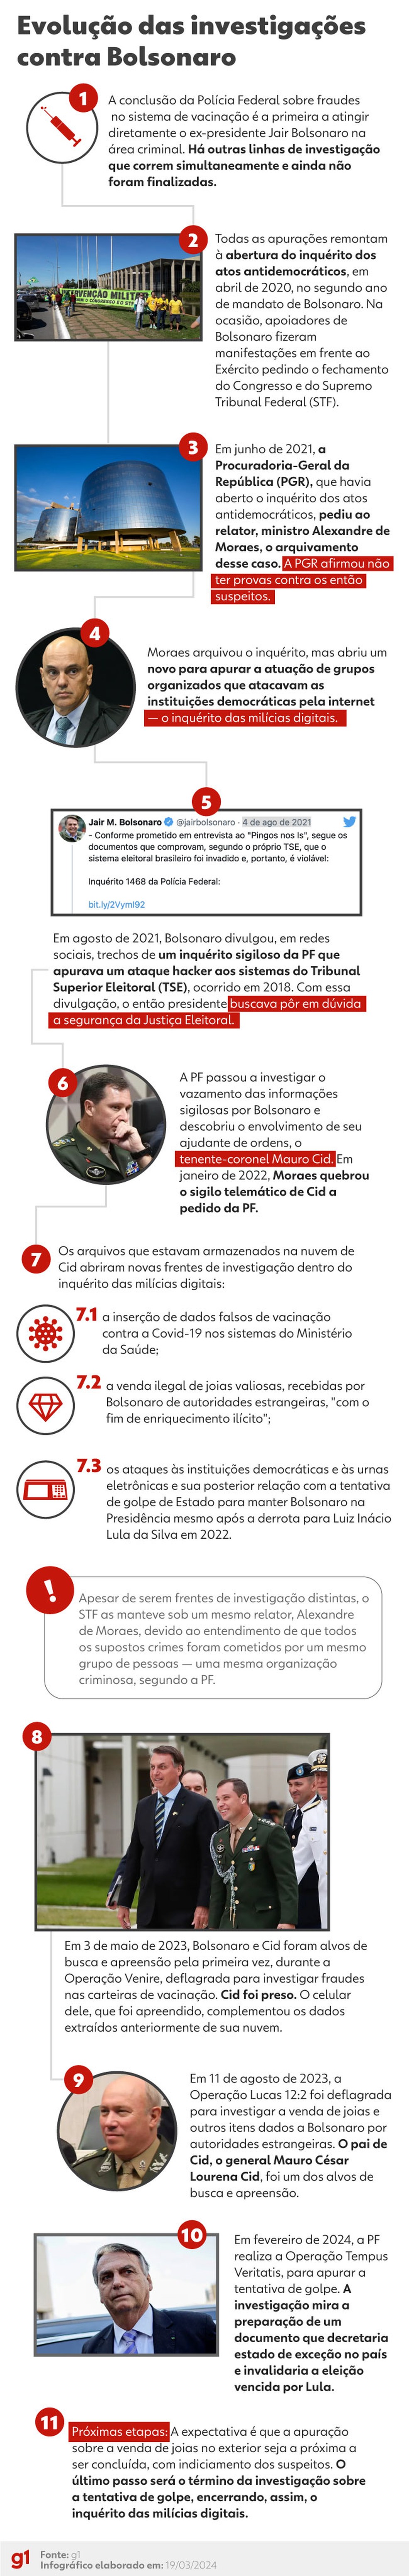 Linha do tempo mostra evolução das investigações contra Bolsonaro até o primeiro indiciamento Foto: Editoria de Arte/g1 — Foto: Foto: Editoria de Arte/g1